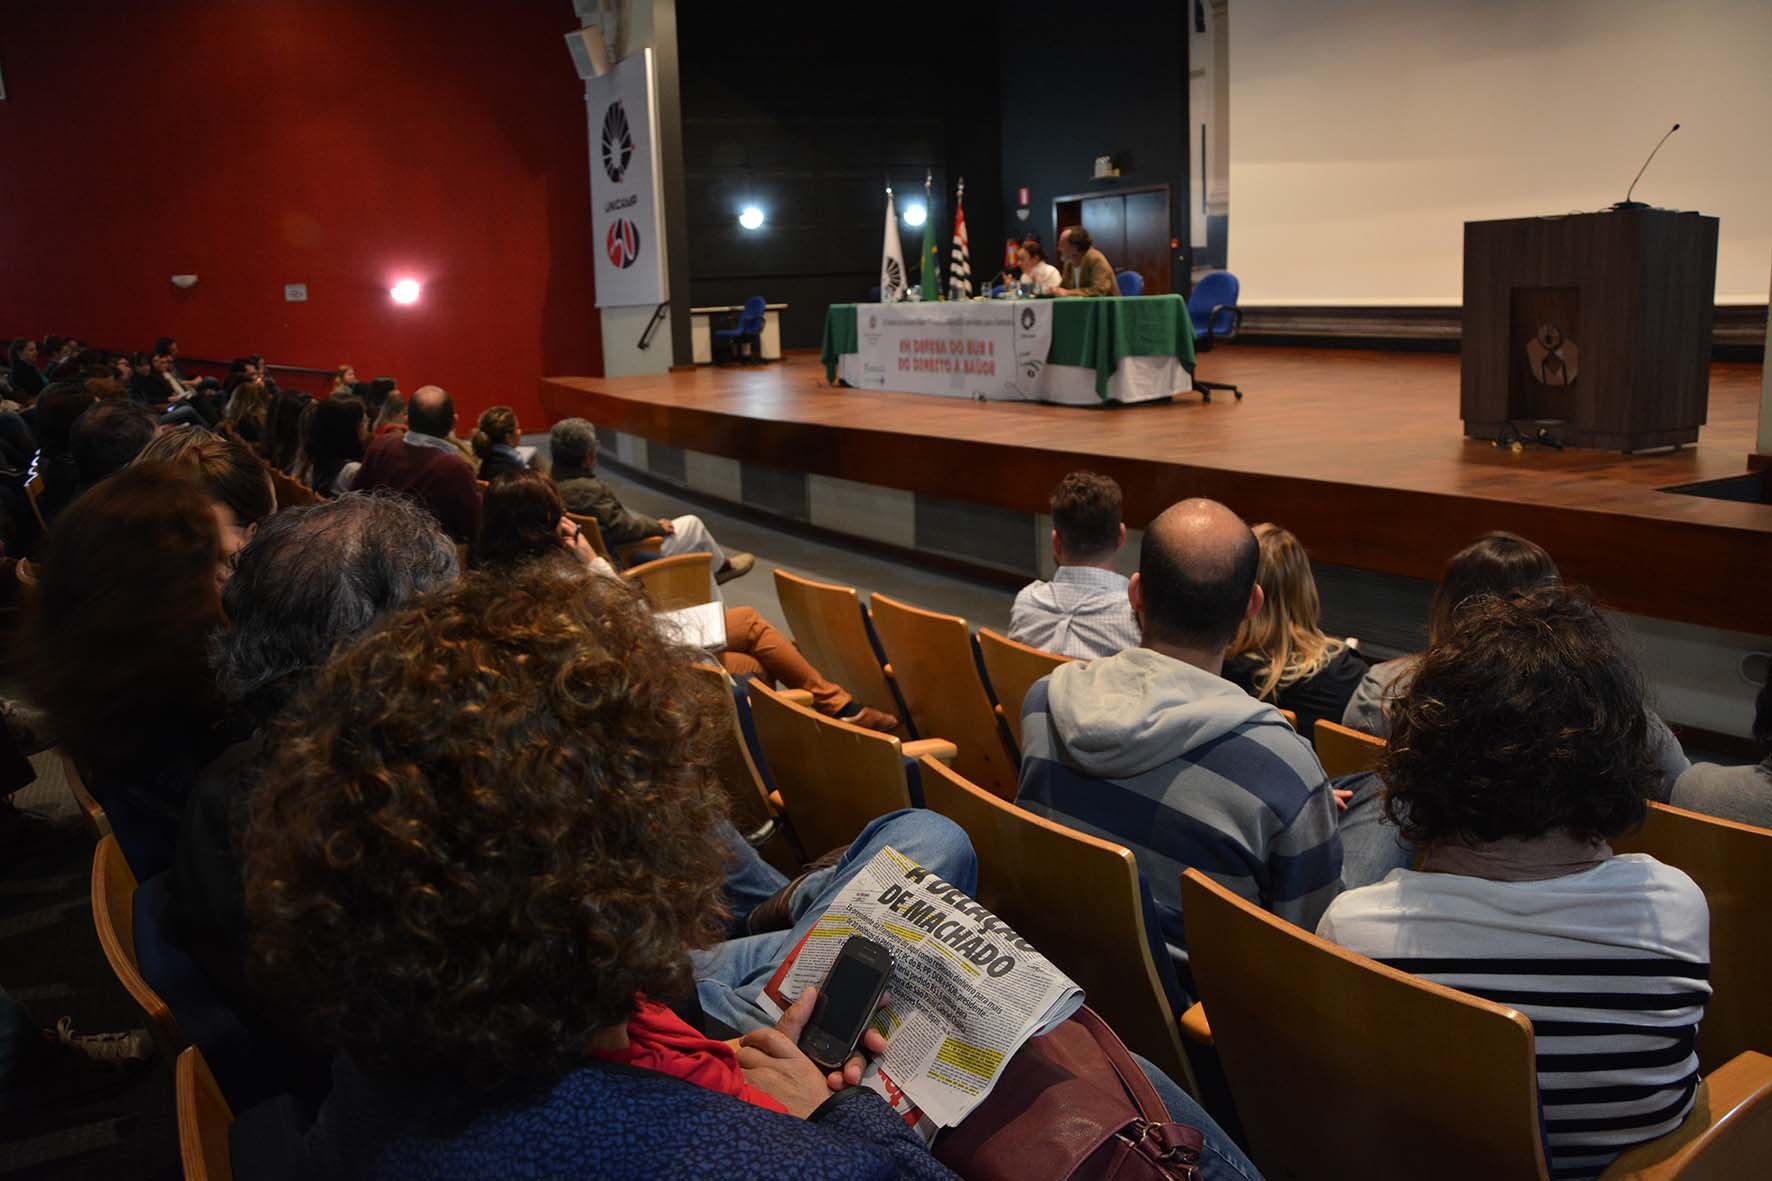 Evento organizado pelo Coletivo Paideia da FCM, em parceria com a Abrasco, lota auditório da faculdade em reflexão sobre o SUS e o direito à Saúde/Foto: Marcelo Oliveira